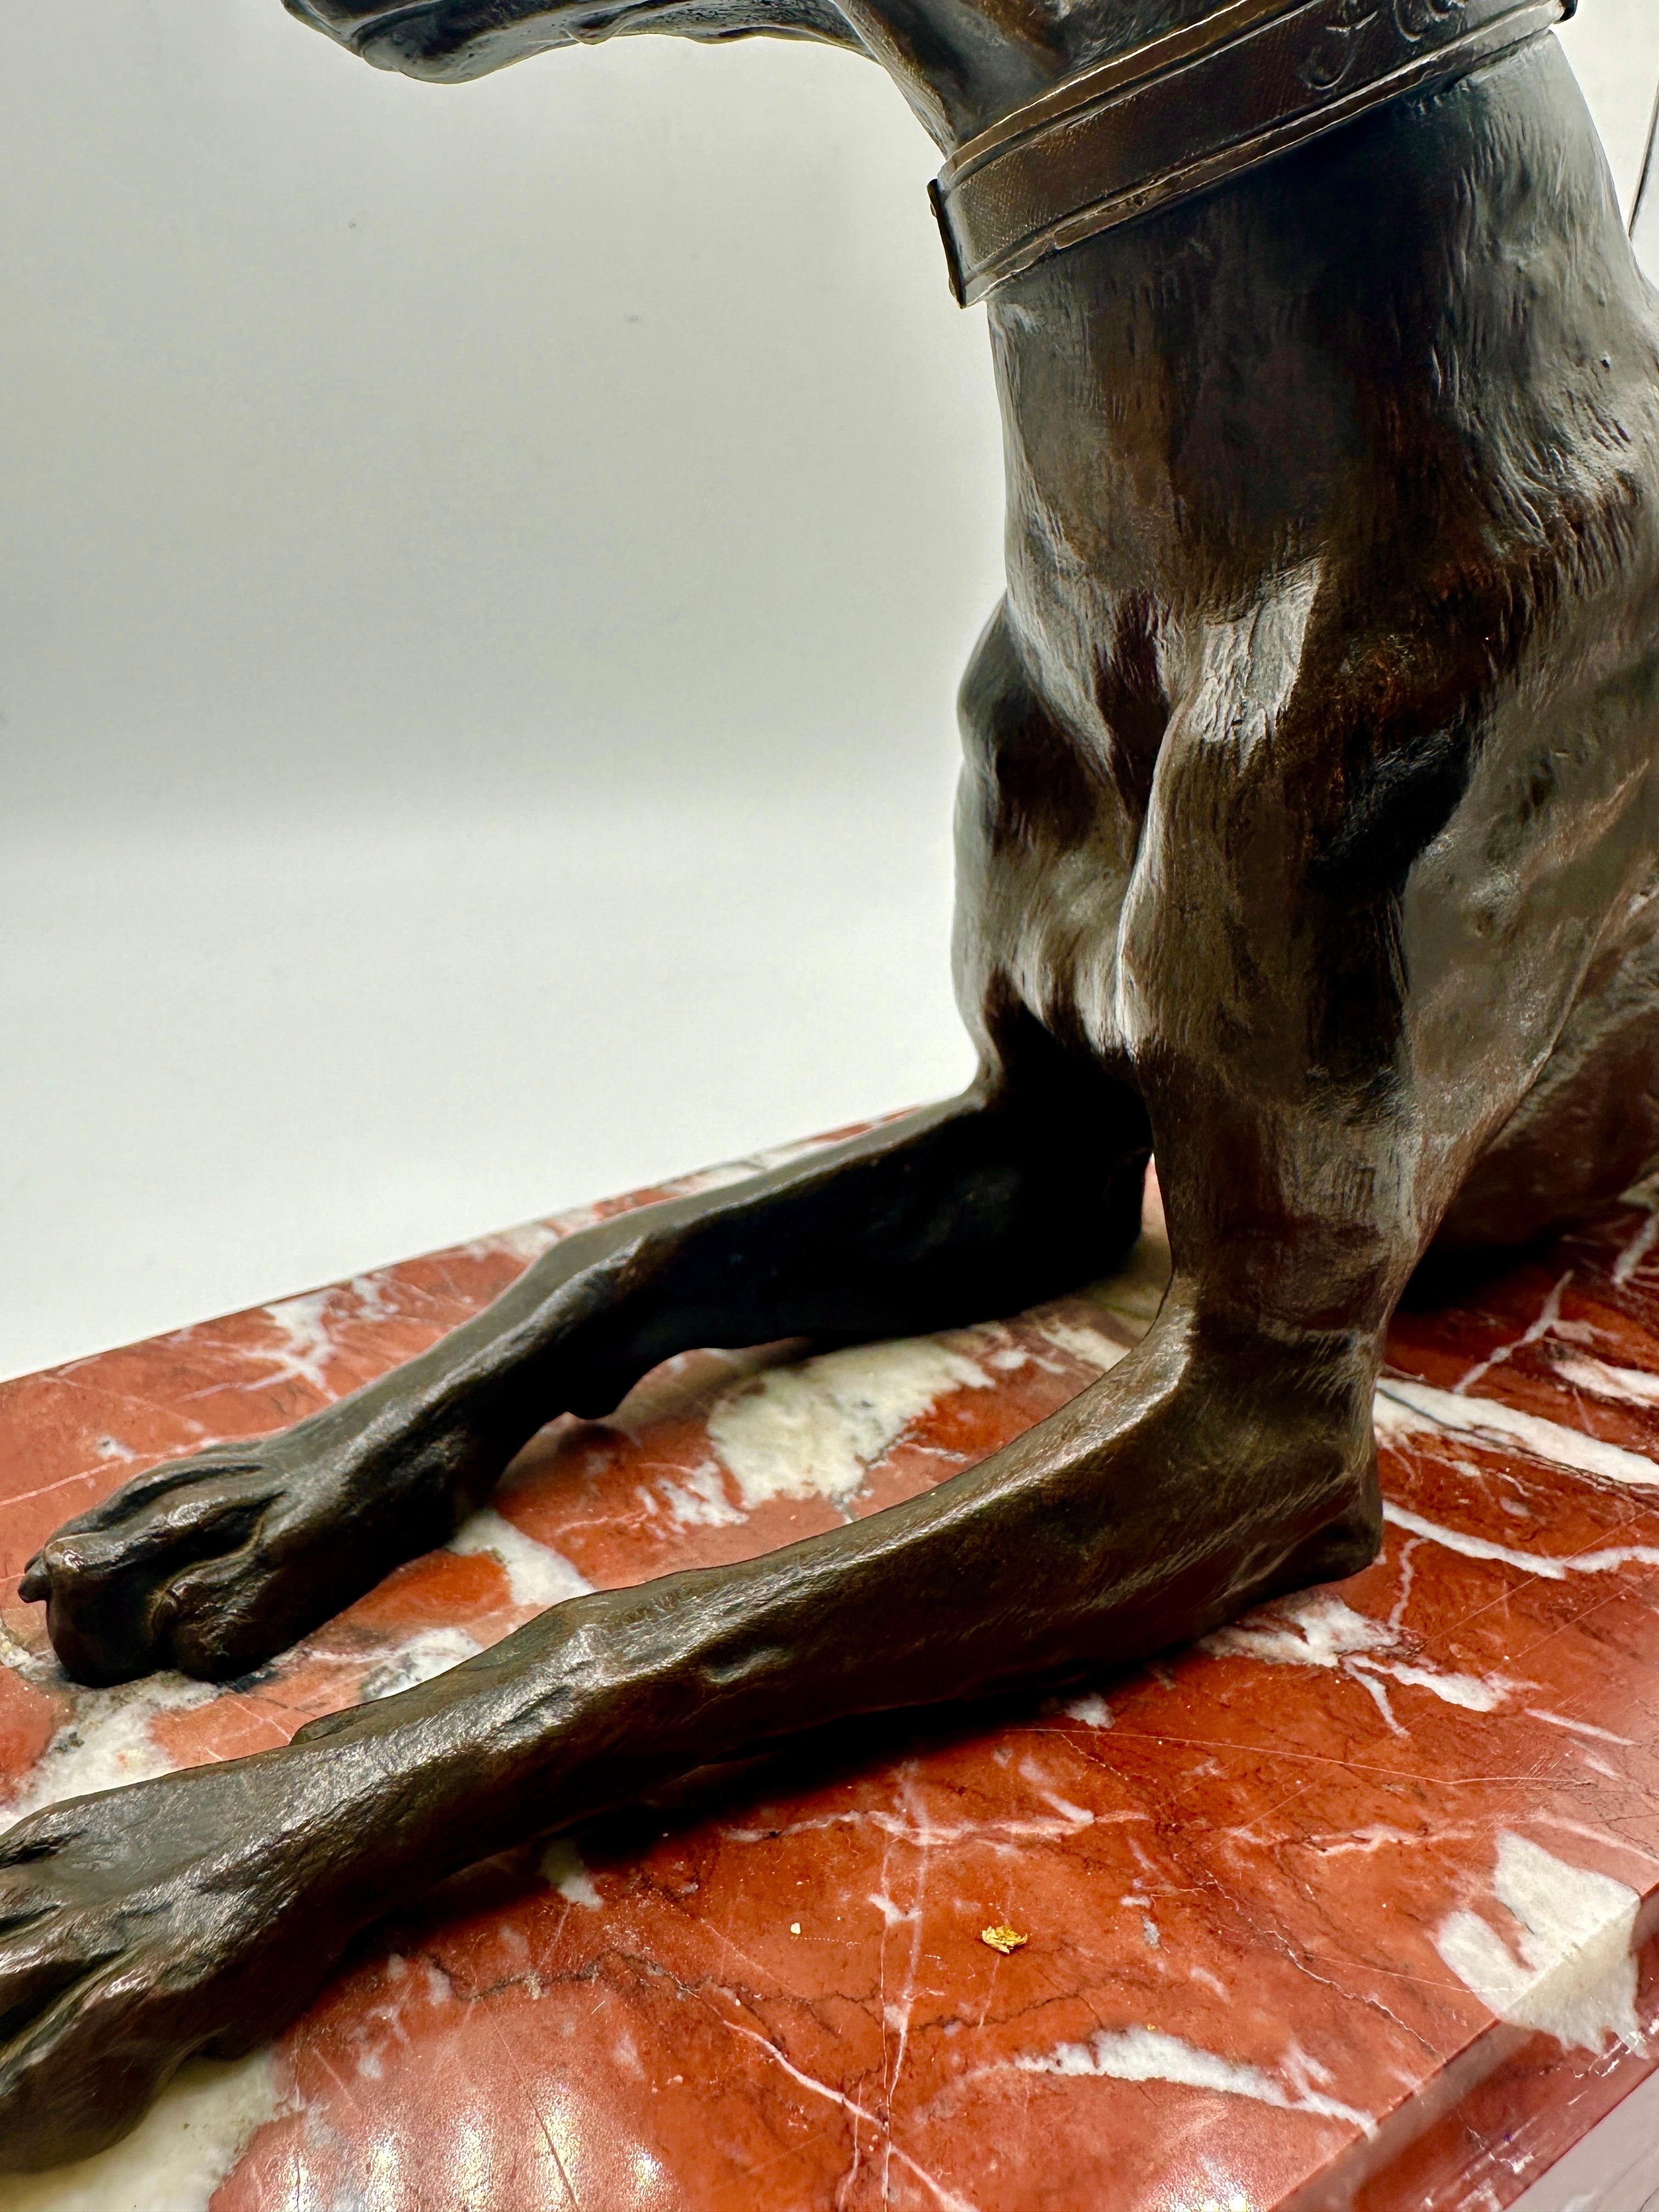 Eine große Bronzefigur eines liegenden Windhundes aus dem späten 19. Jahrhundert nach dem französischen Tierbildhauer Christophe Fratin (1801-1864), mit warmer brauner Patina auf einem Sockel aus rouge griotte. Signiert 'FRATIN' am Kragen.

Bronze